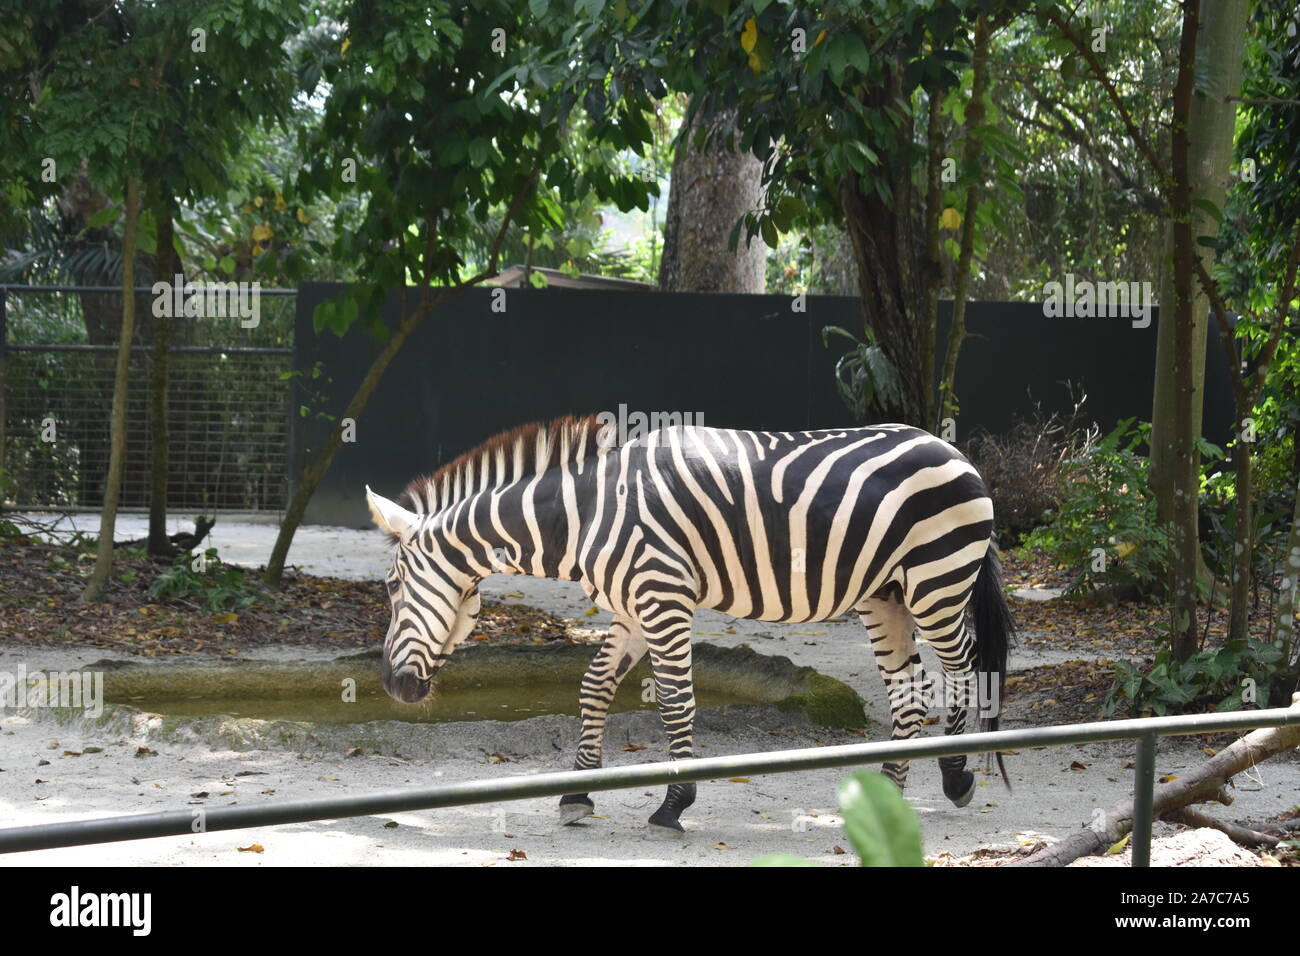 Bandes noires et blanches dans le zoo marche zebra Banque D'Images